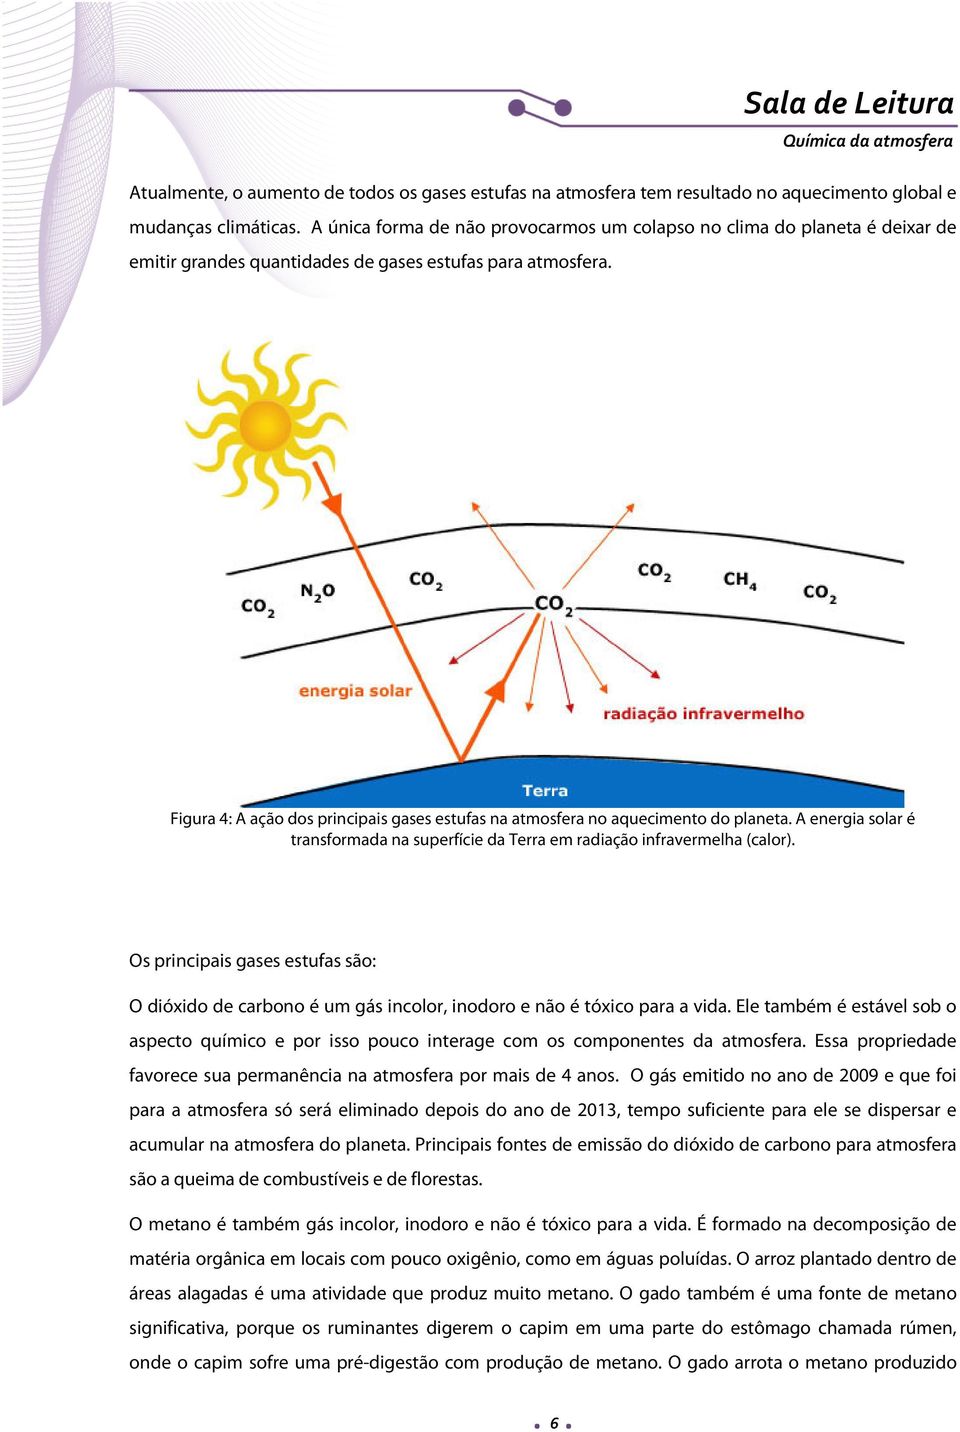 Figura 4: A ação dos principais gases estufas na atmosfera no aquecimento do planeta. A energia solar é transformada na superfície da Terra em radiação infravermelha (calor).